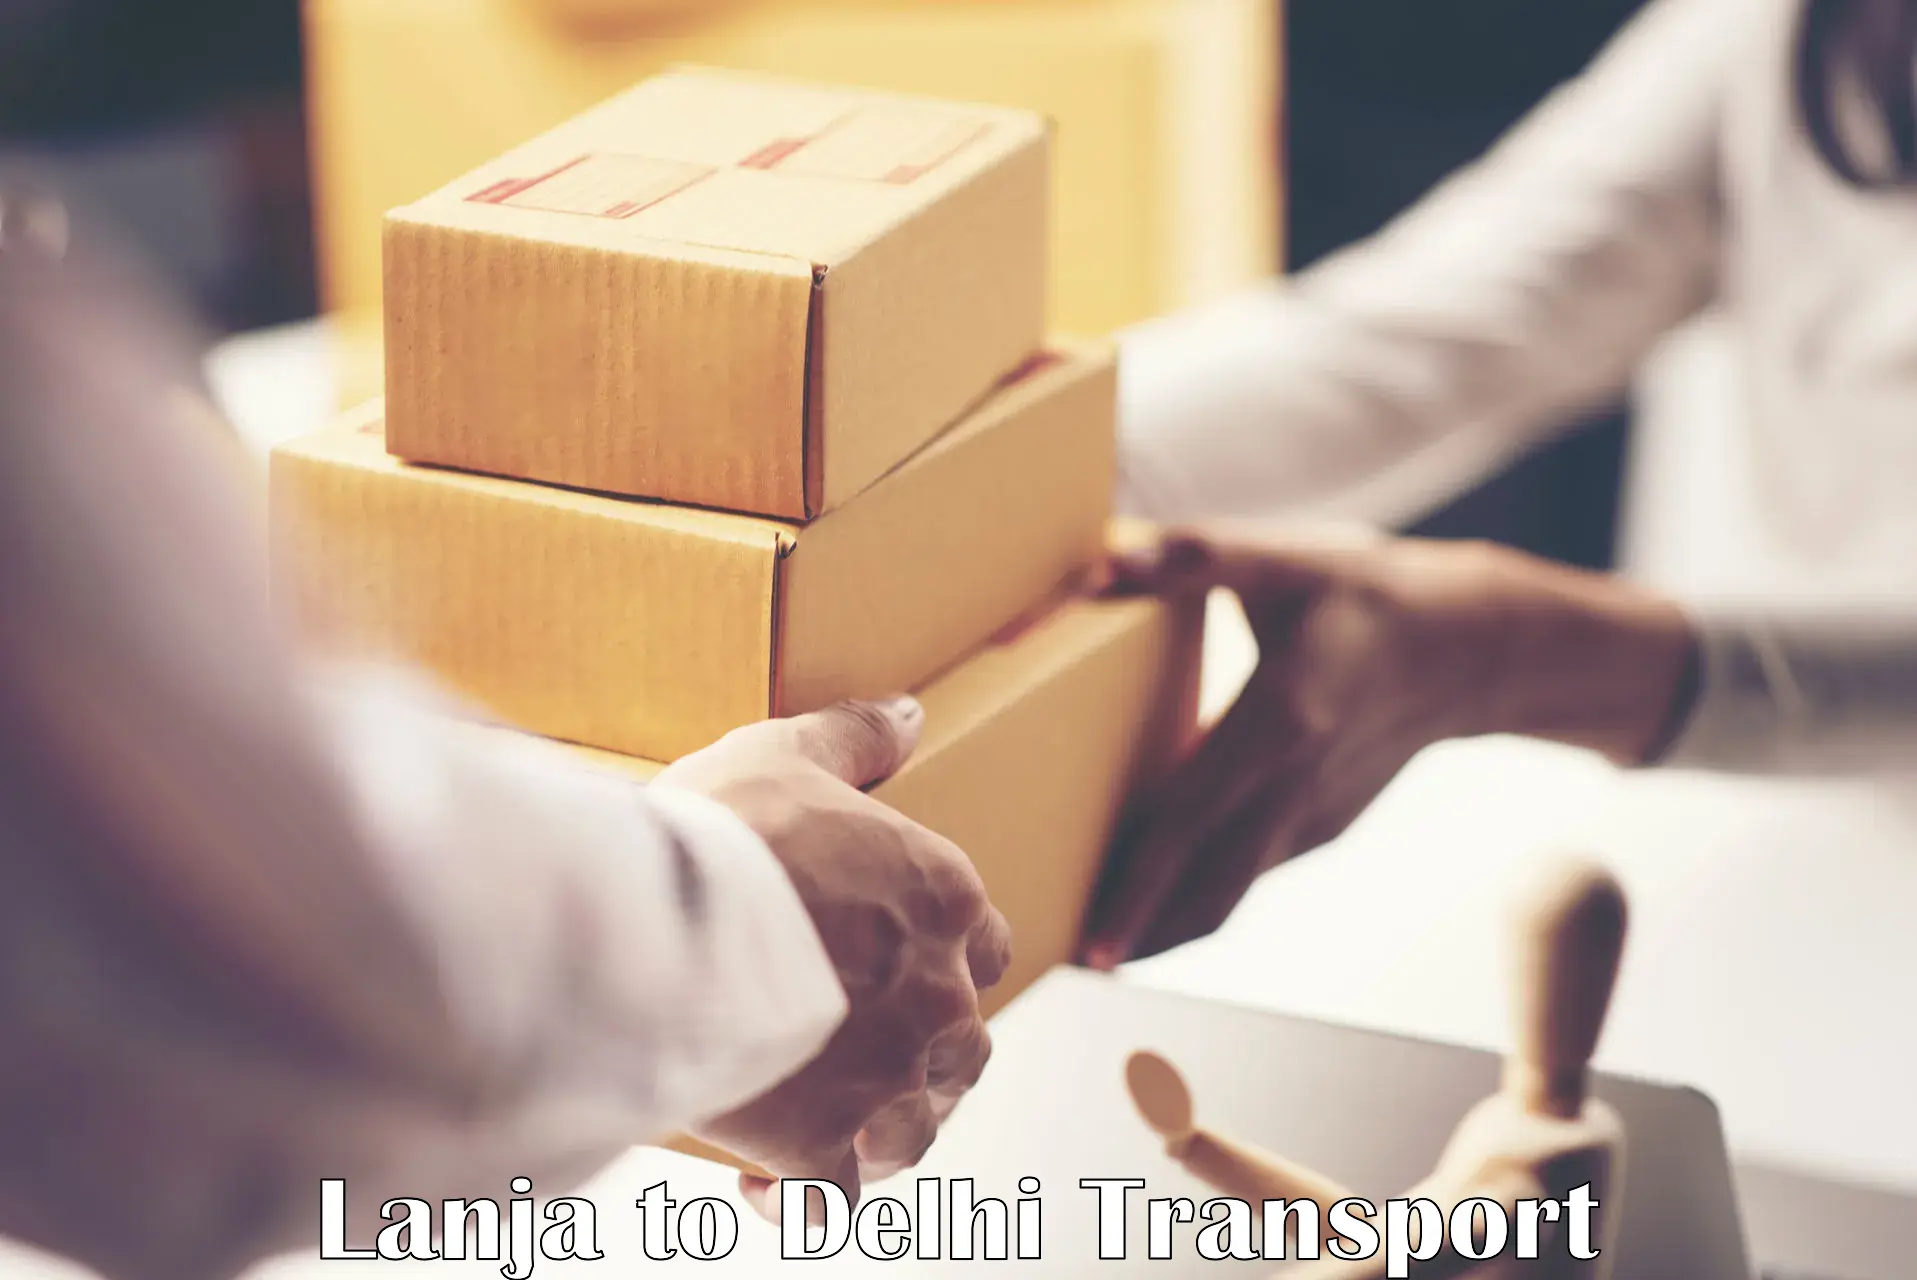 Delivery service in Lanja to Jamia Millia Islamia New Delhi